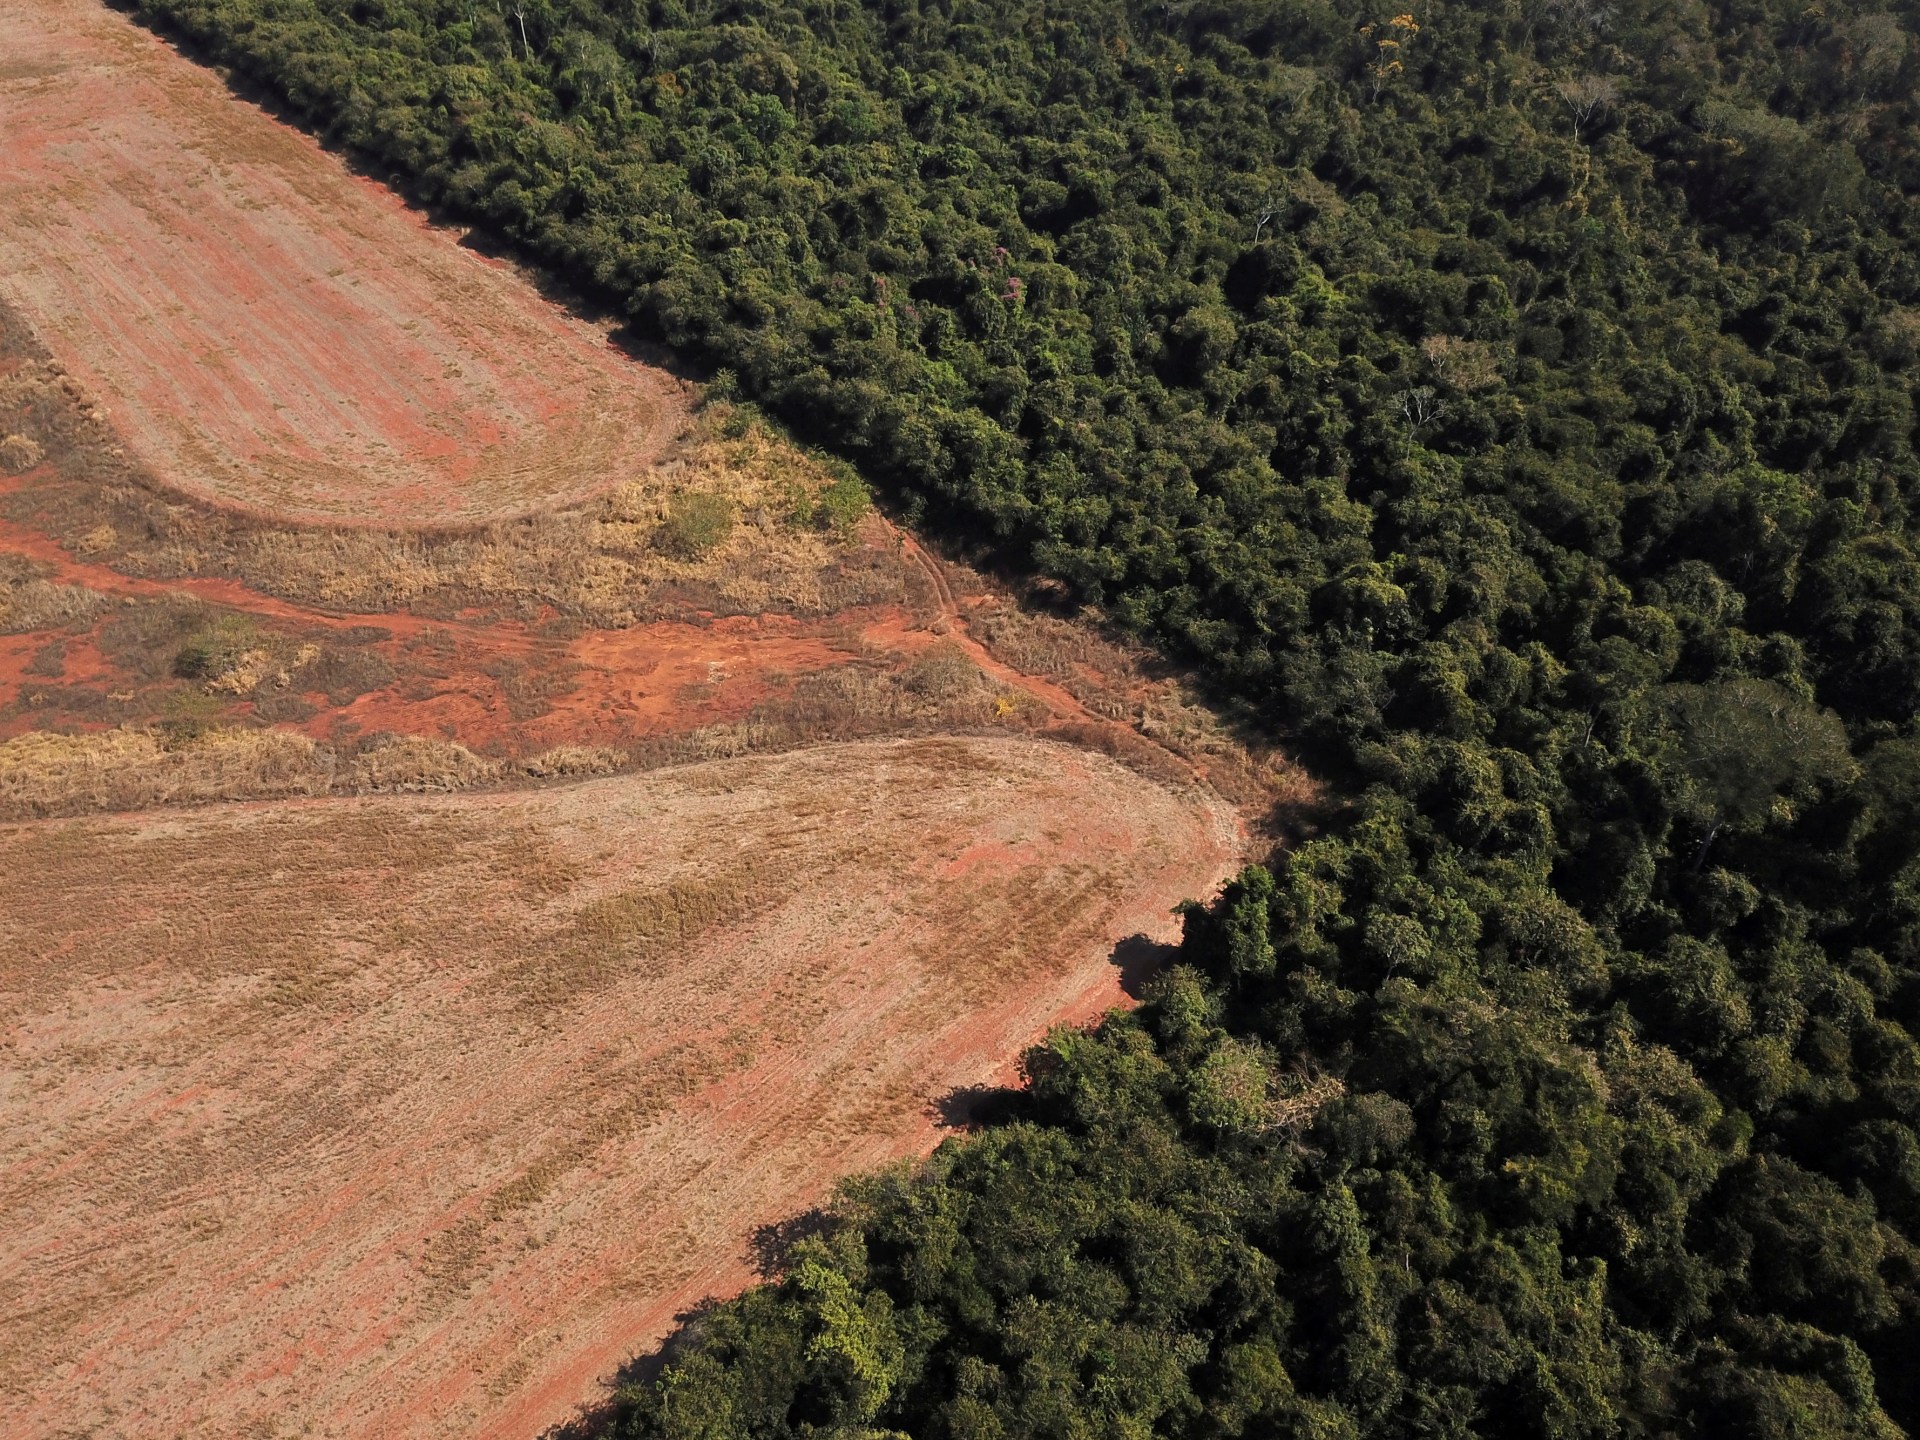 Deutschland sagt Millionen zu, um Brasilien beim Schutz des Amazonas-Regenwaldes zu helfen |  Umweltnachrichten